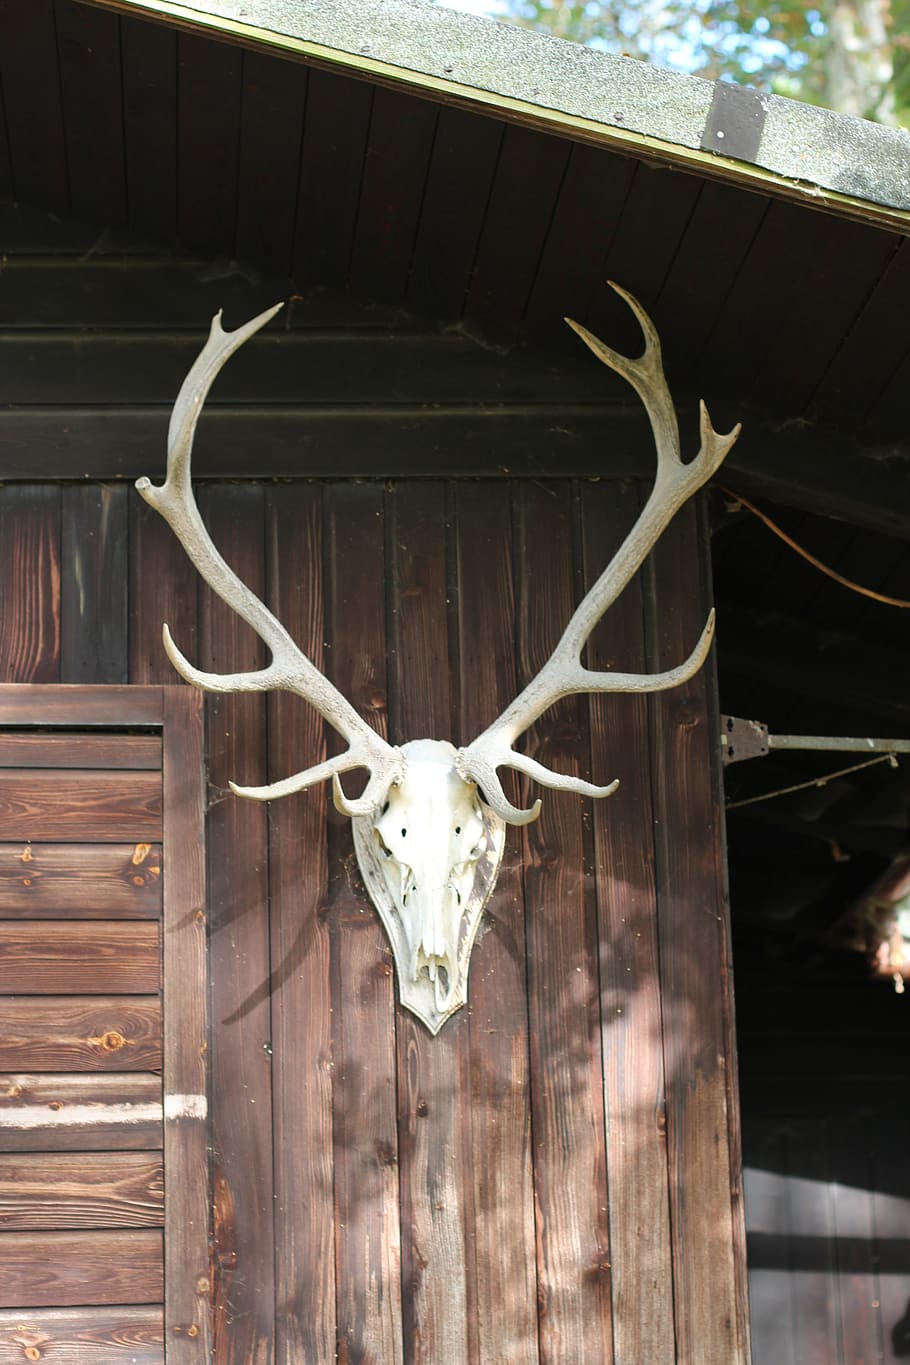 Antler, Deer, Log Cabin, Vacation, deer antler, taxidermy, trophy, animal body part, hanging, animal head